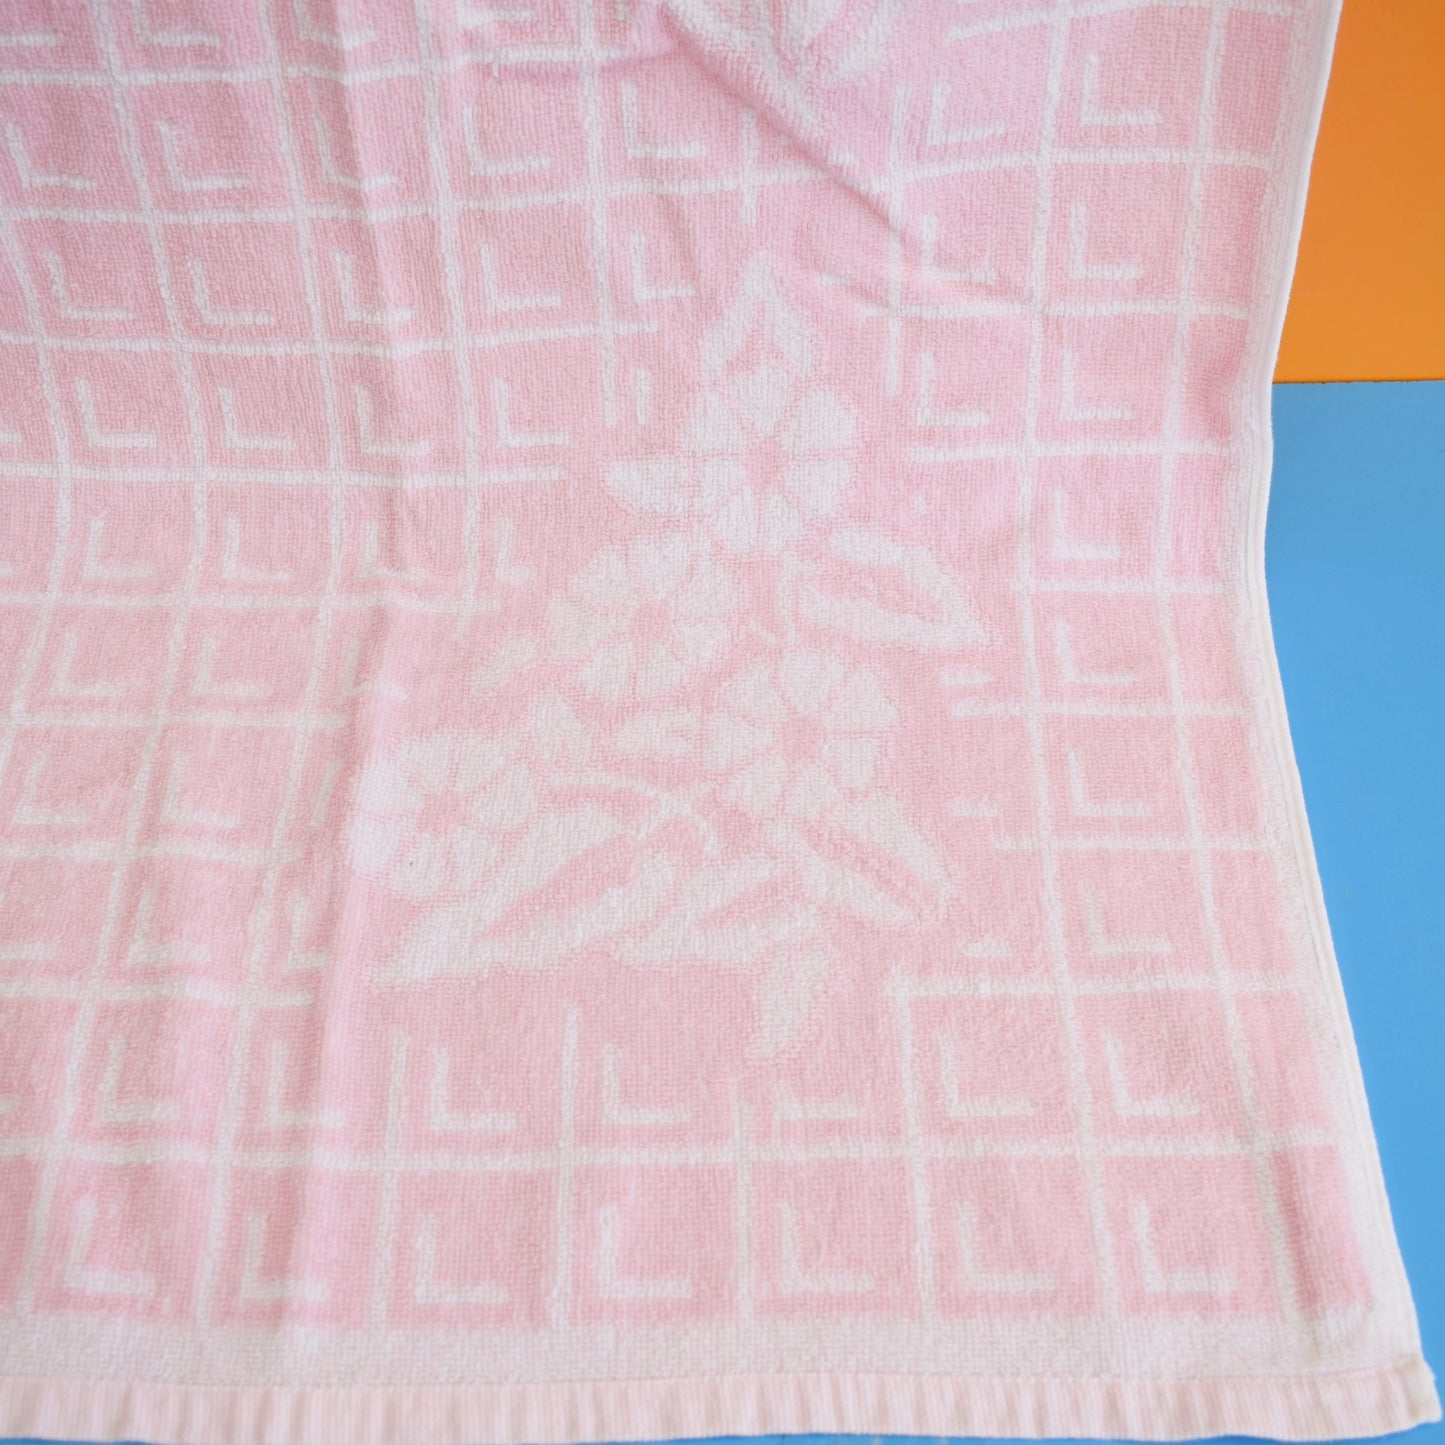 Vintage 1970s Cotton Bath Towel - Pink